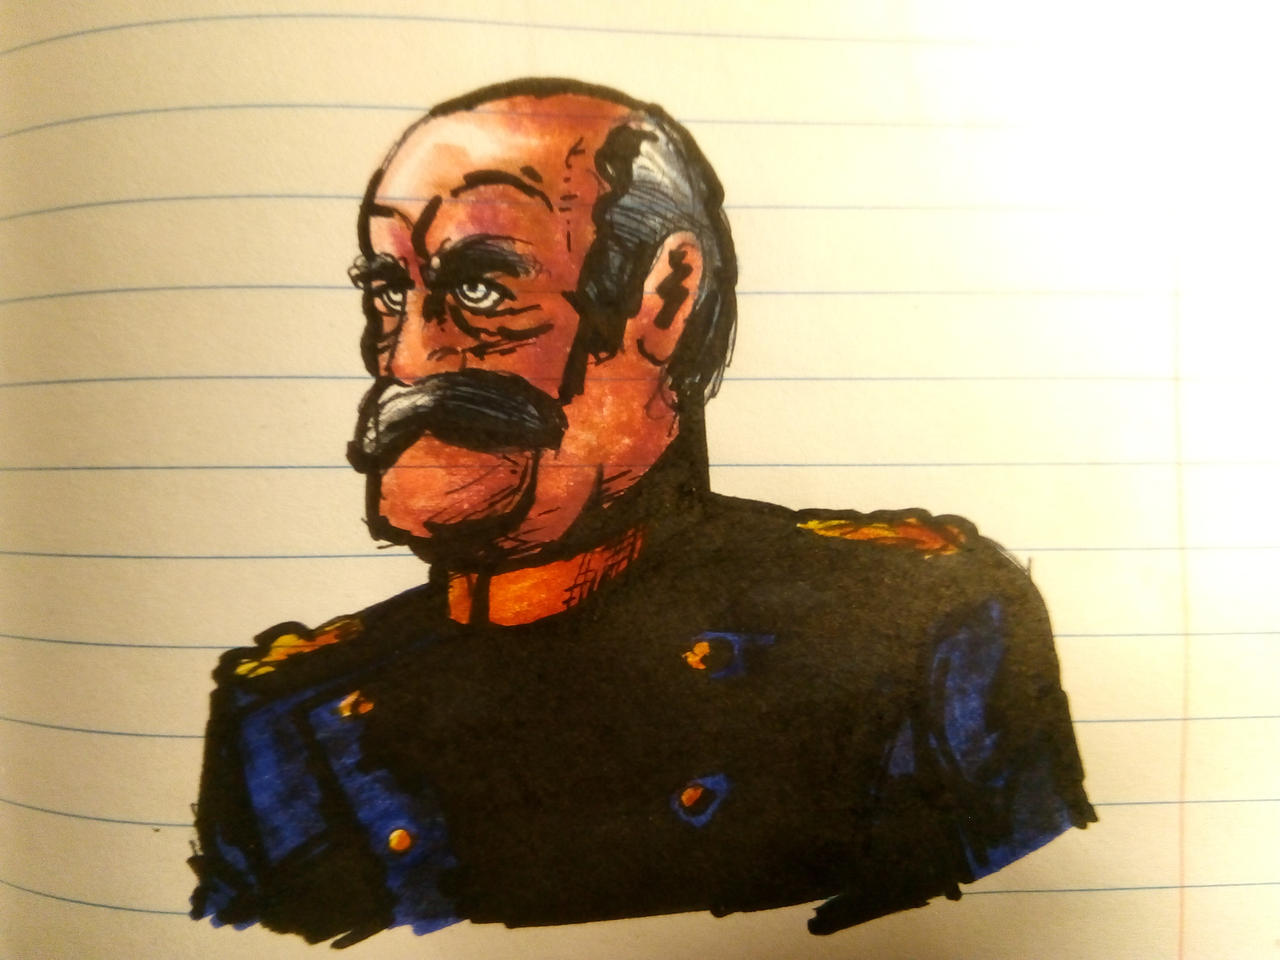 Otto Von Bismarck By Julianivorobotnik On Deviantart